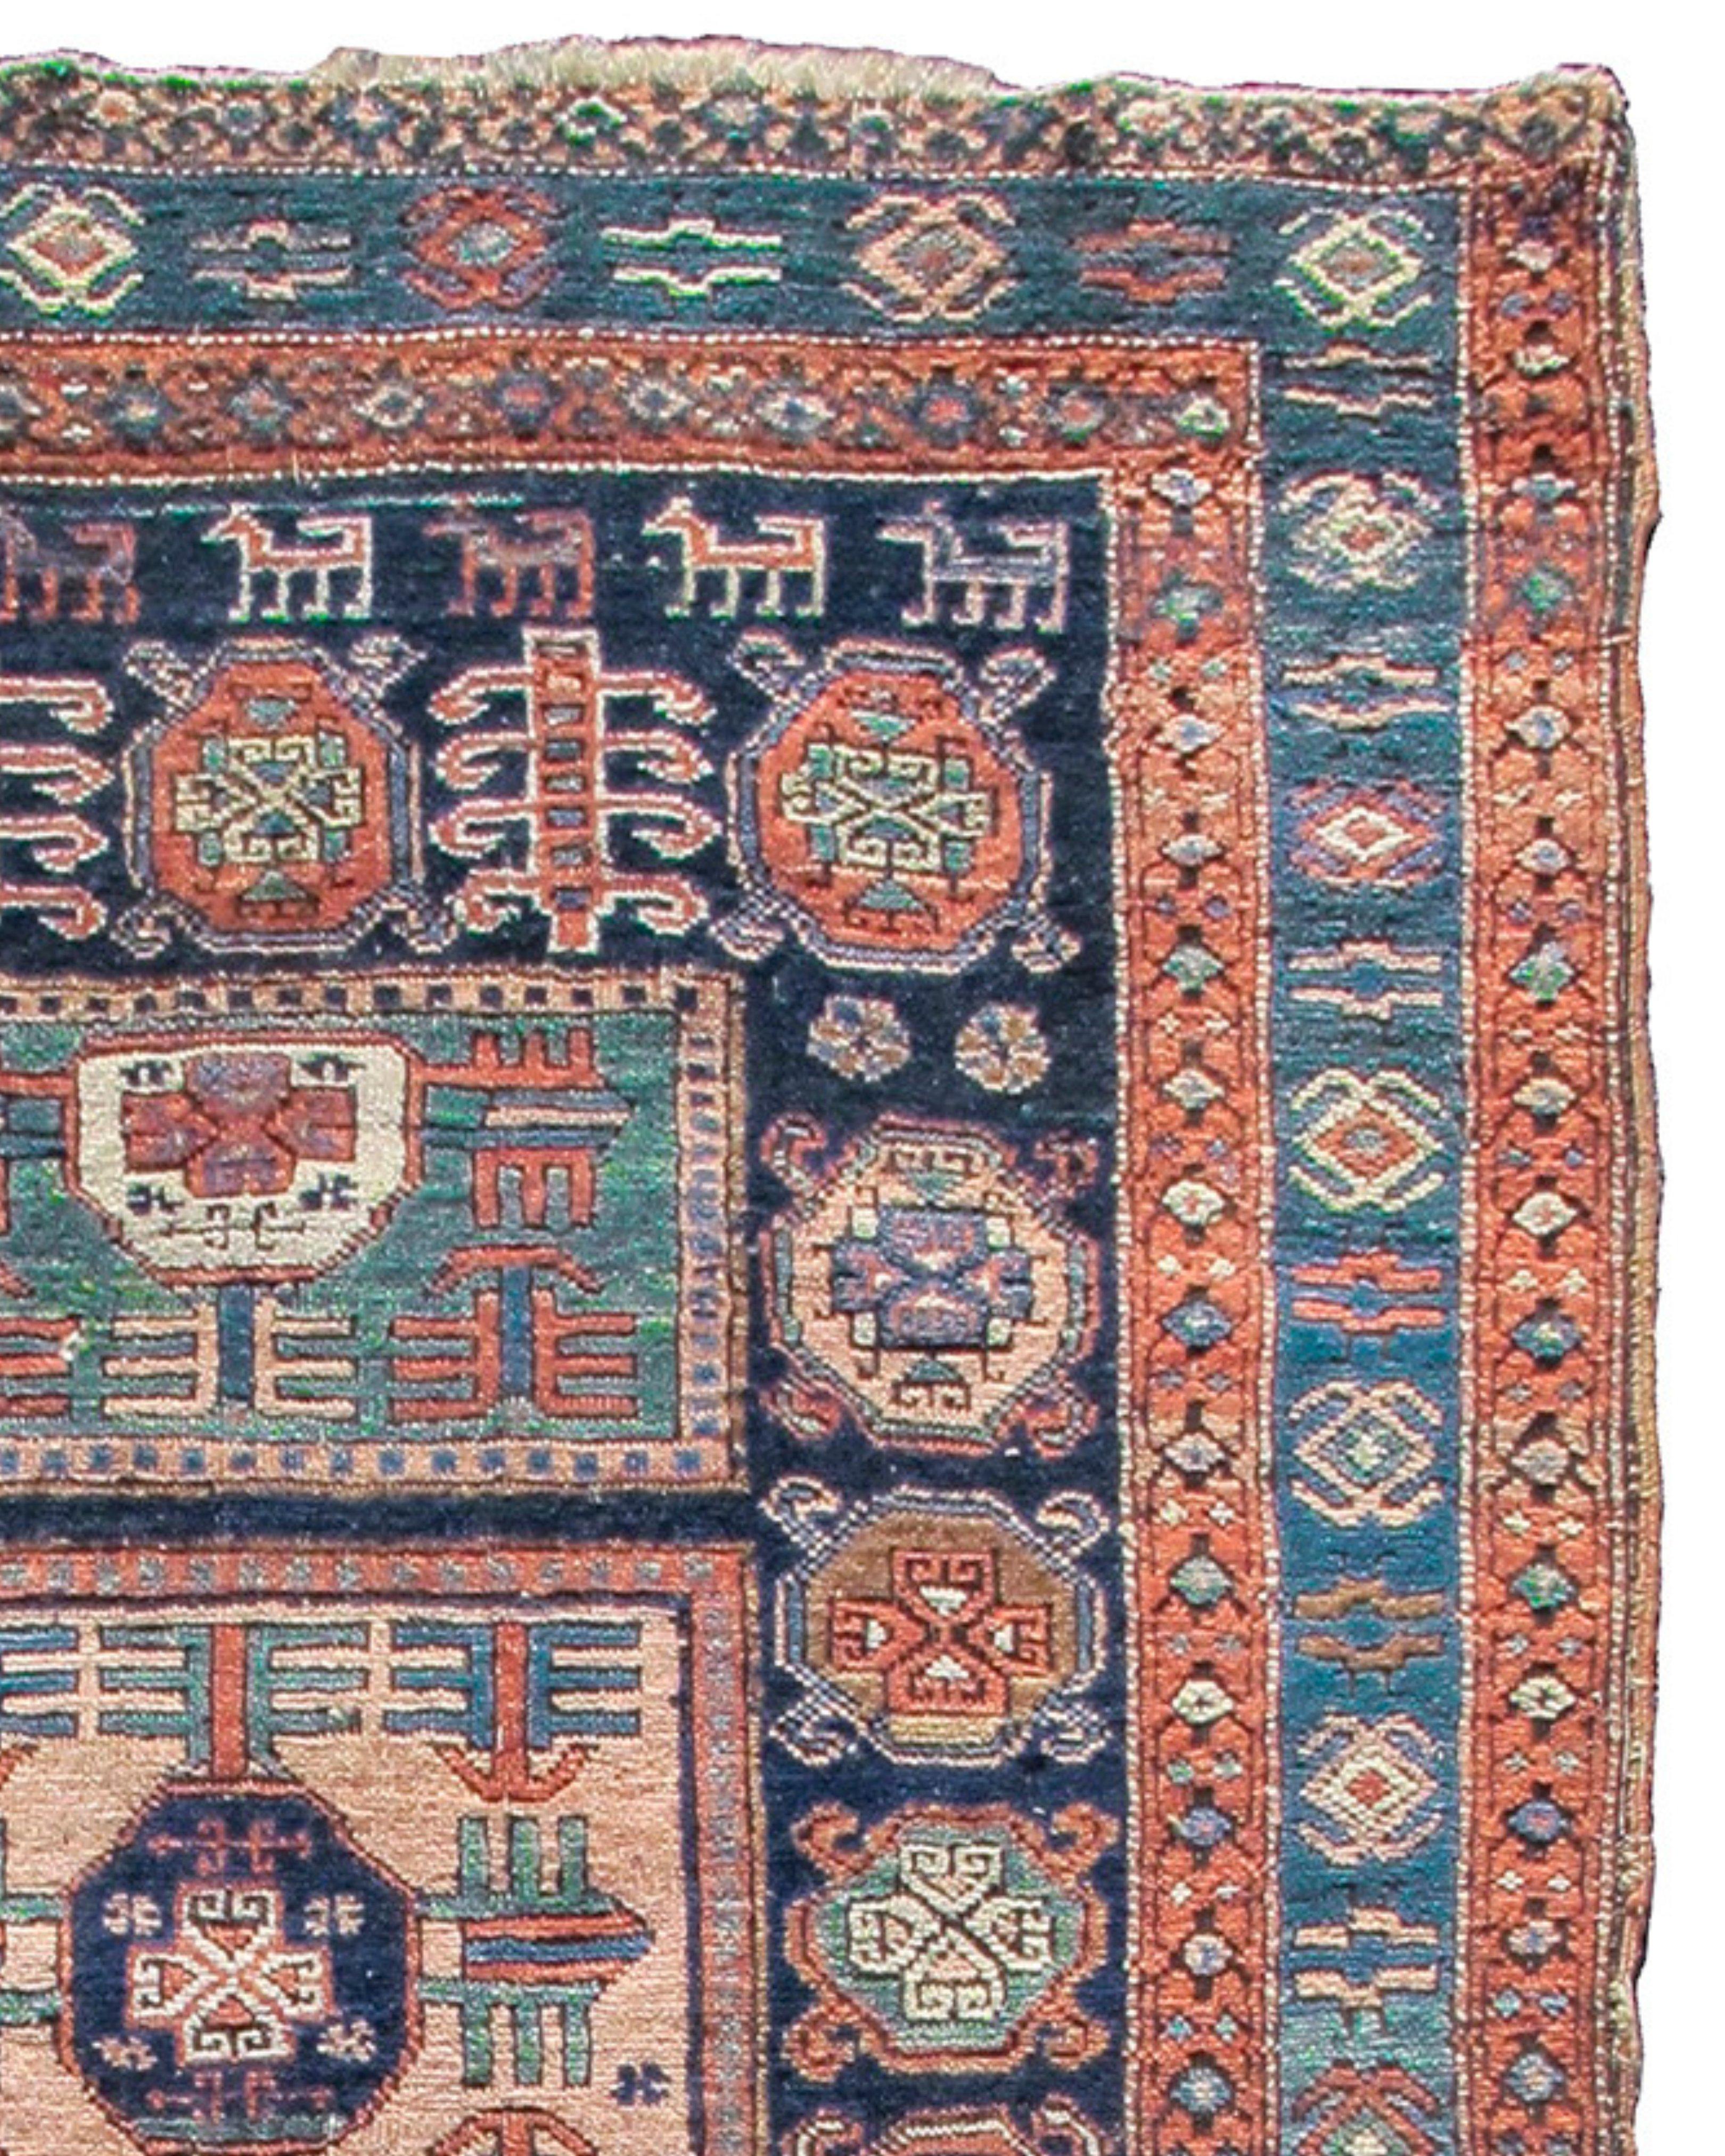 Ancien tapis persan Heriz, Début du 20e siècle

Informations supplémentaires :
Dimensions : 3'10